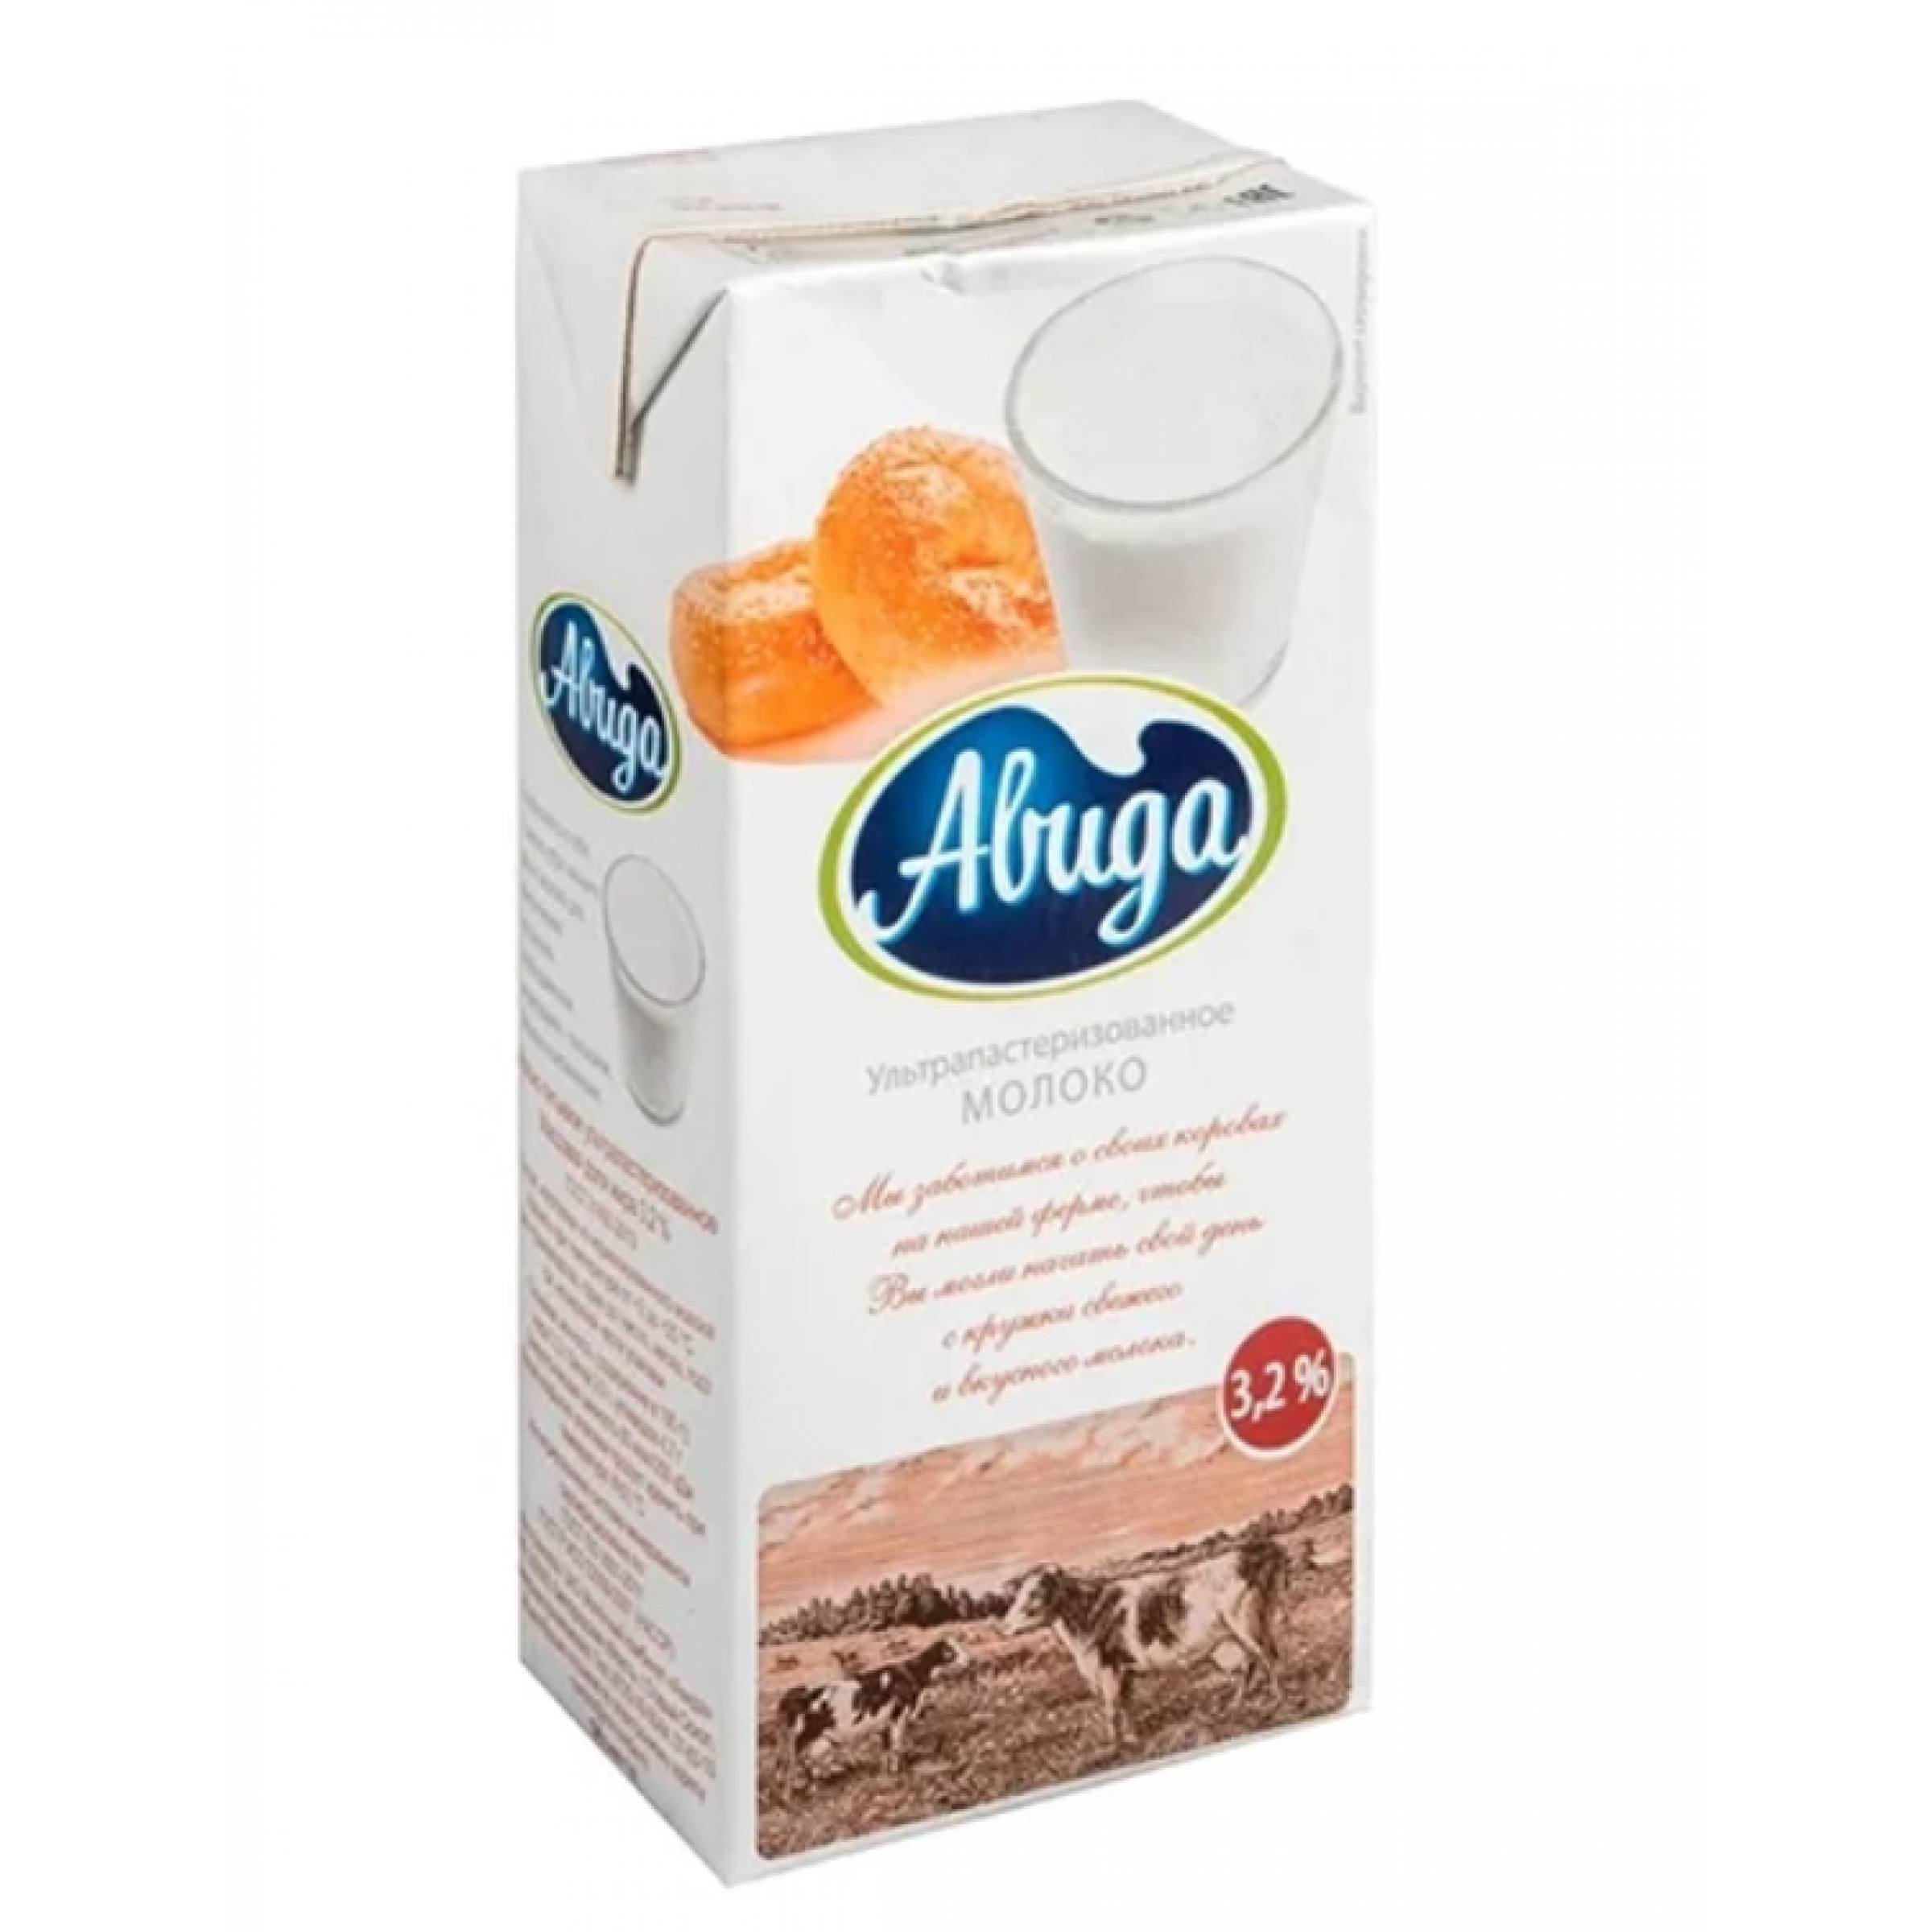 Ультрапастеризованное молоко Авида 3,2%, 970 г